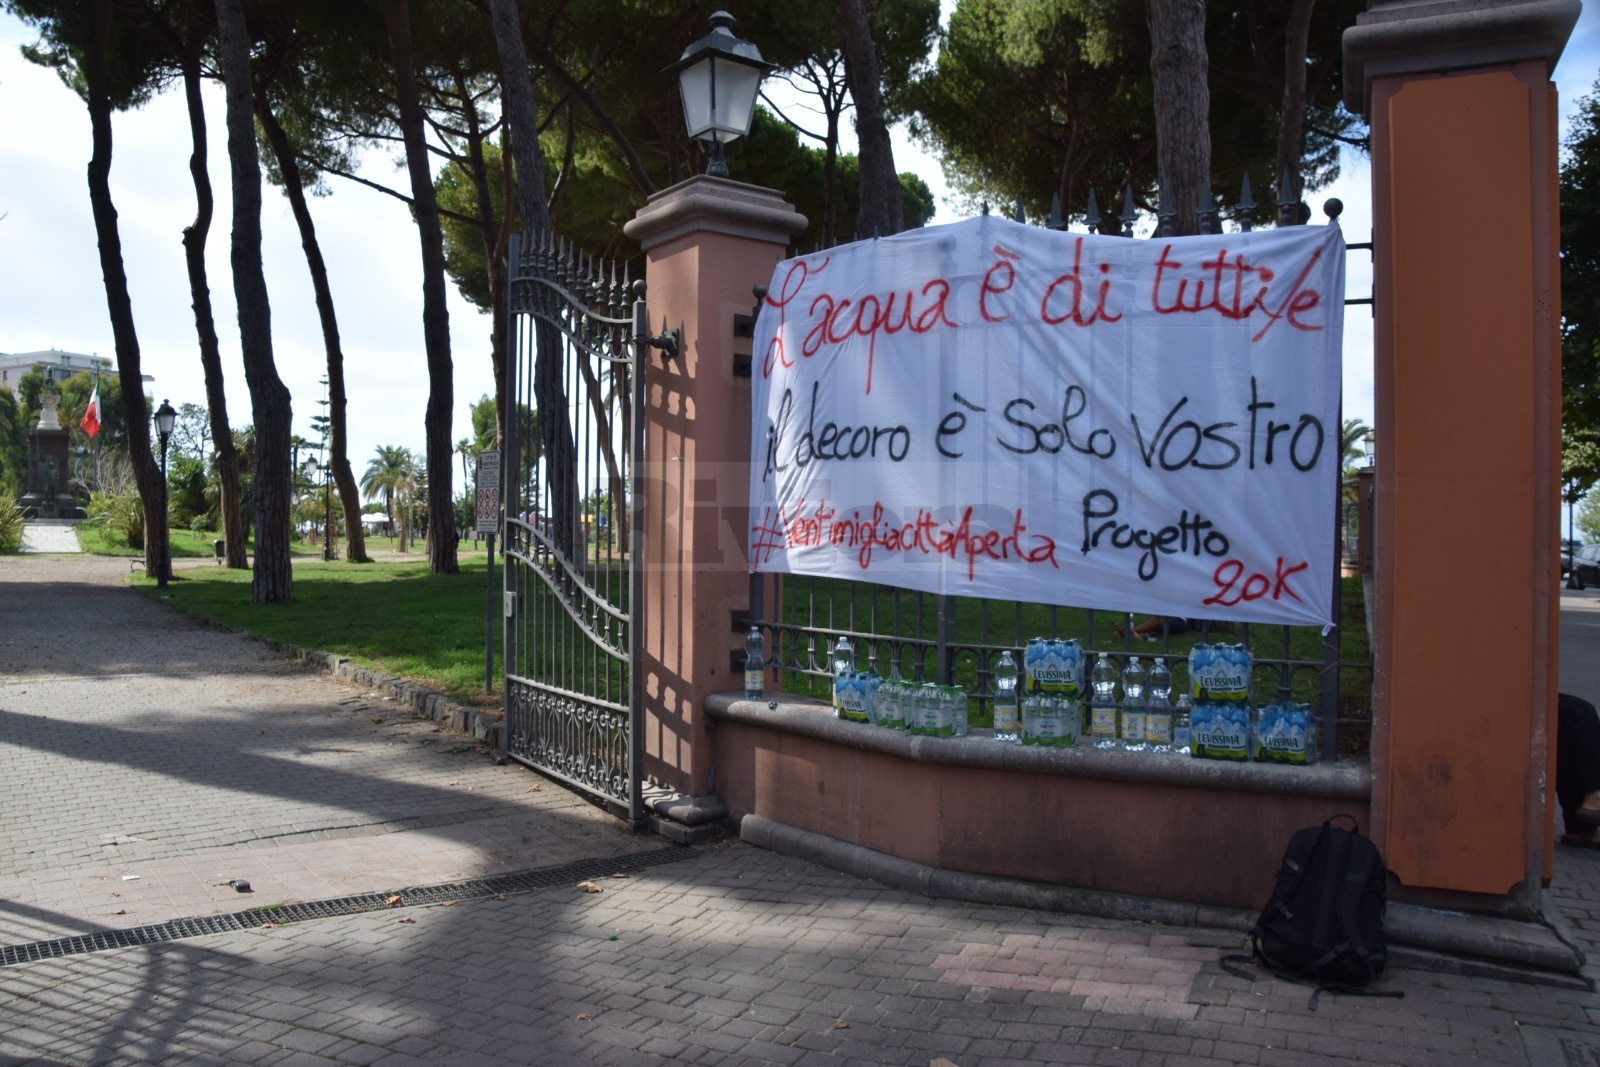 No border Ventimiglia Progetto 20k migranti caso fontana_02